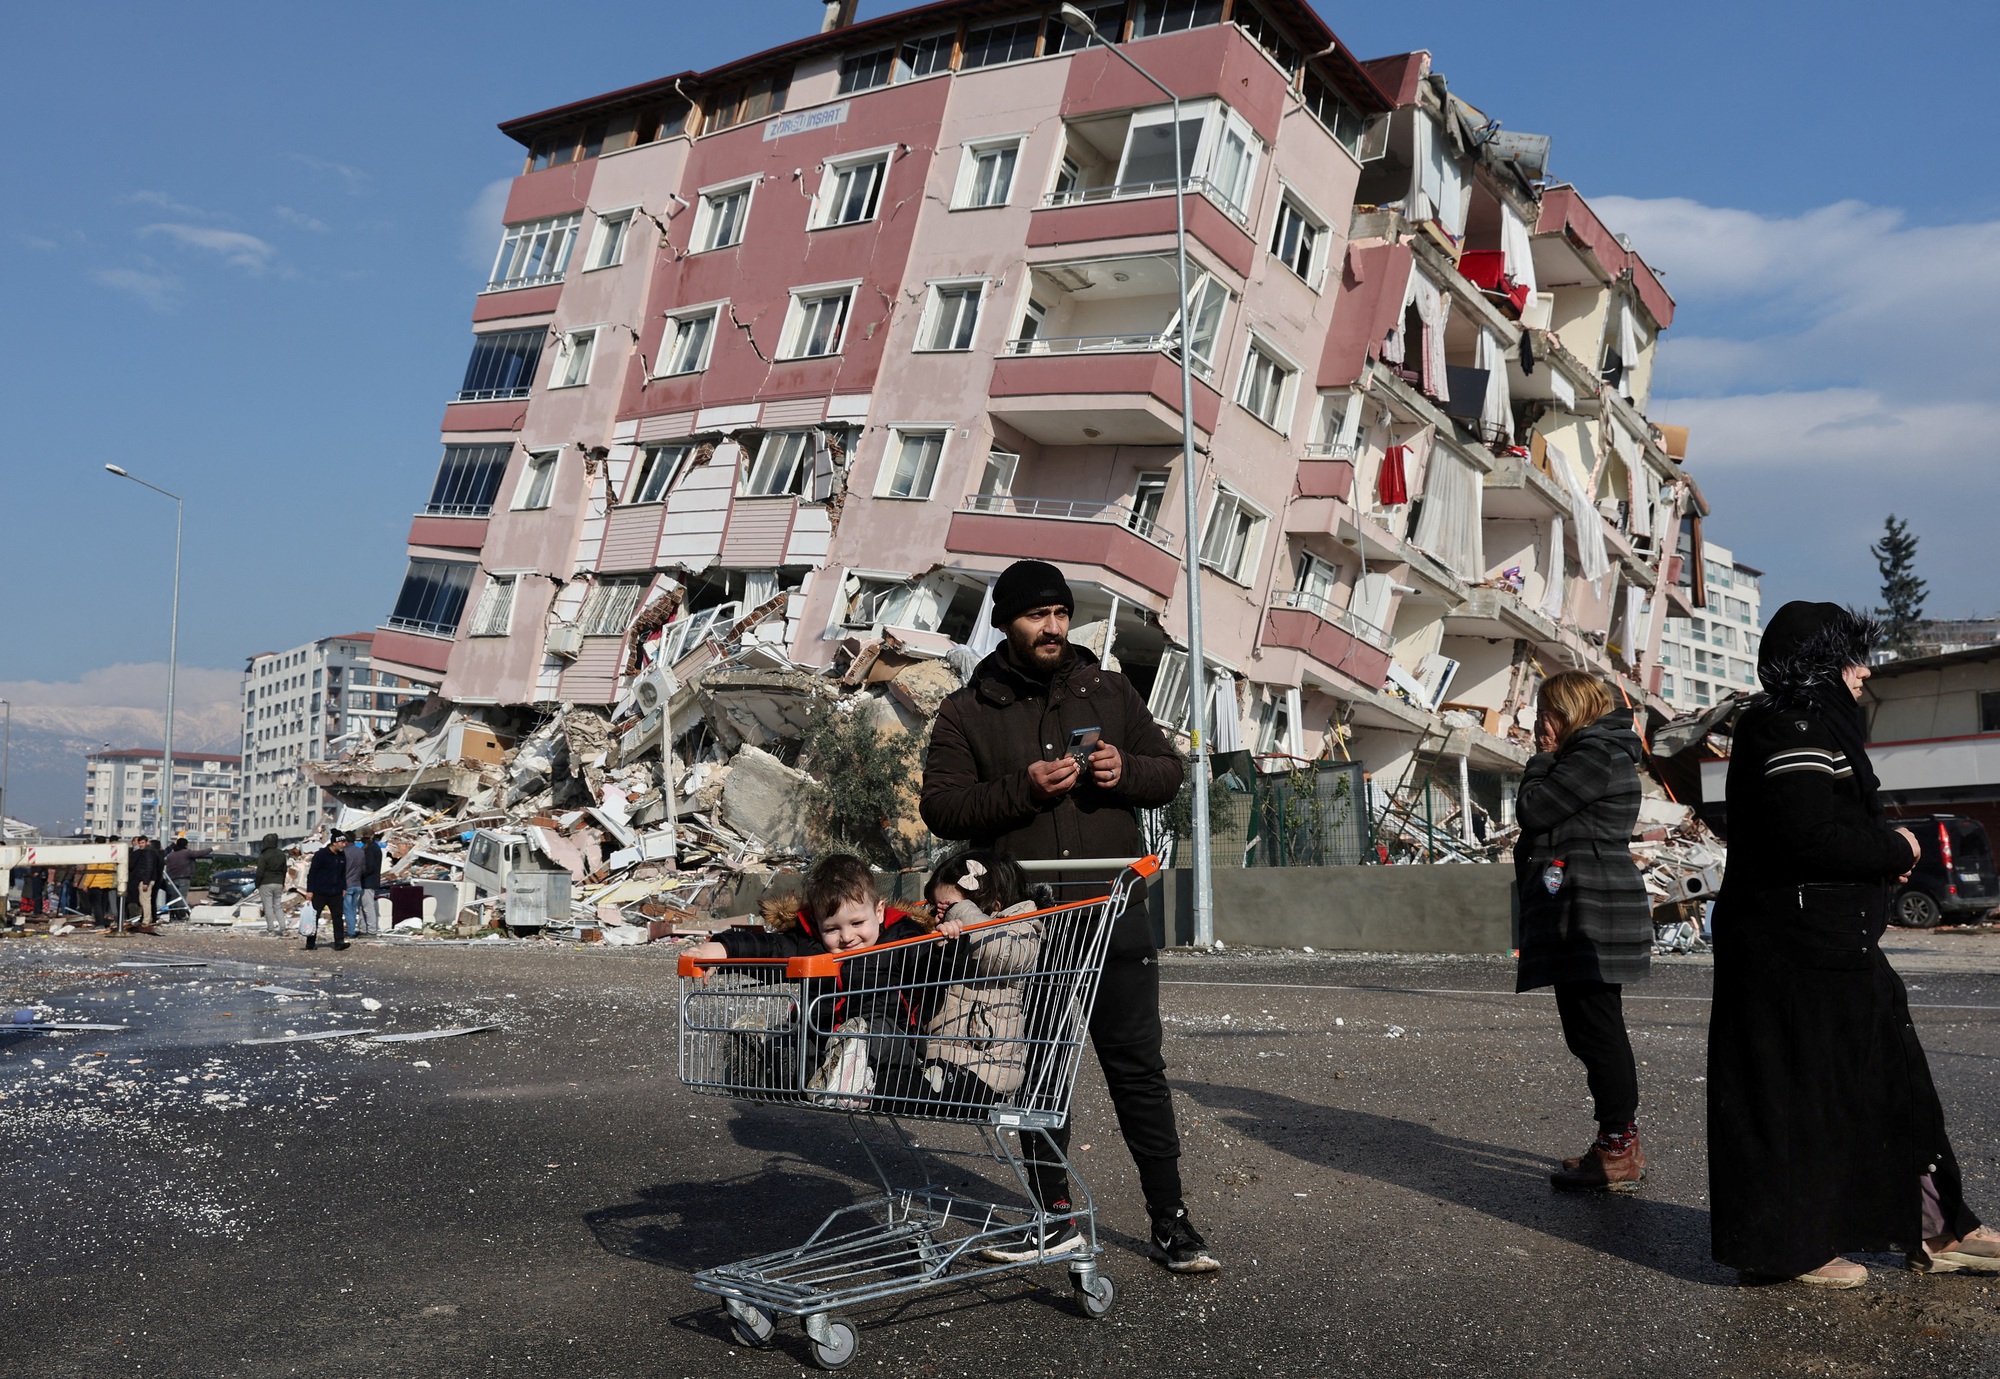  Điều gì xảy ra ở tỉnh của Thổ Nhĩ Kỳ bị động đất tàn phá nặng nhất? - Ảnh 4.